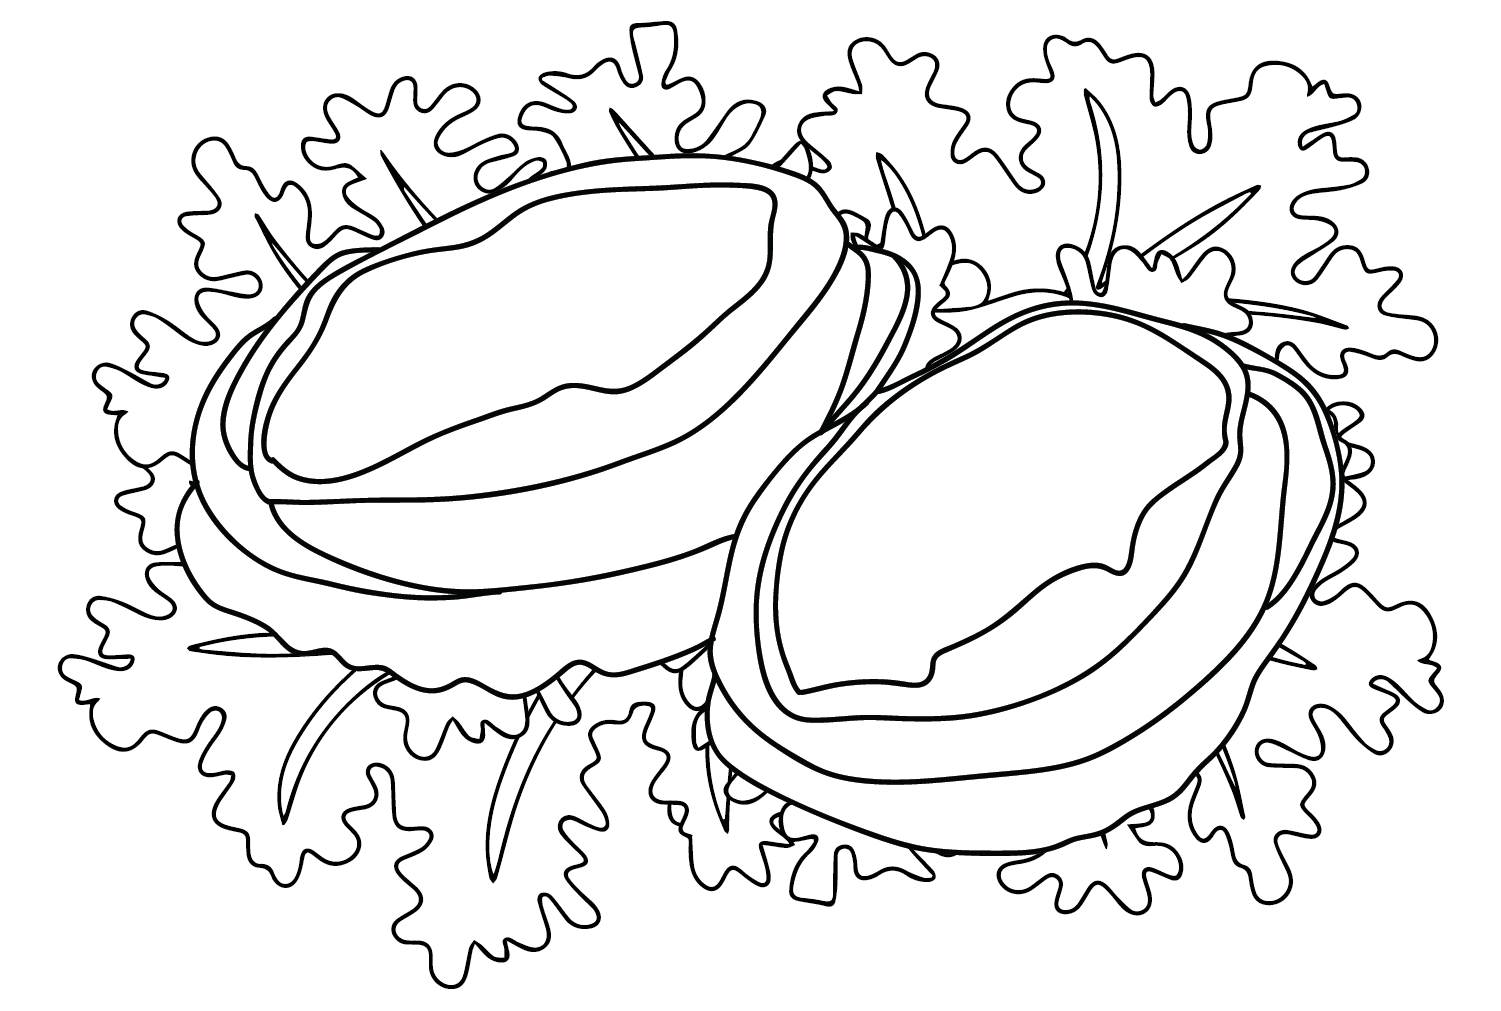 Раскраски для морского ушка, которые можно скачать с сайта Abalone